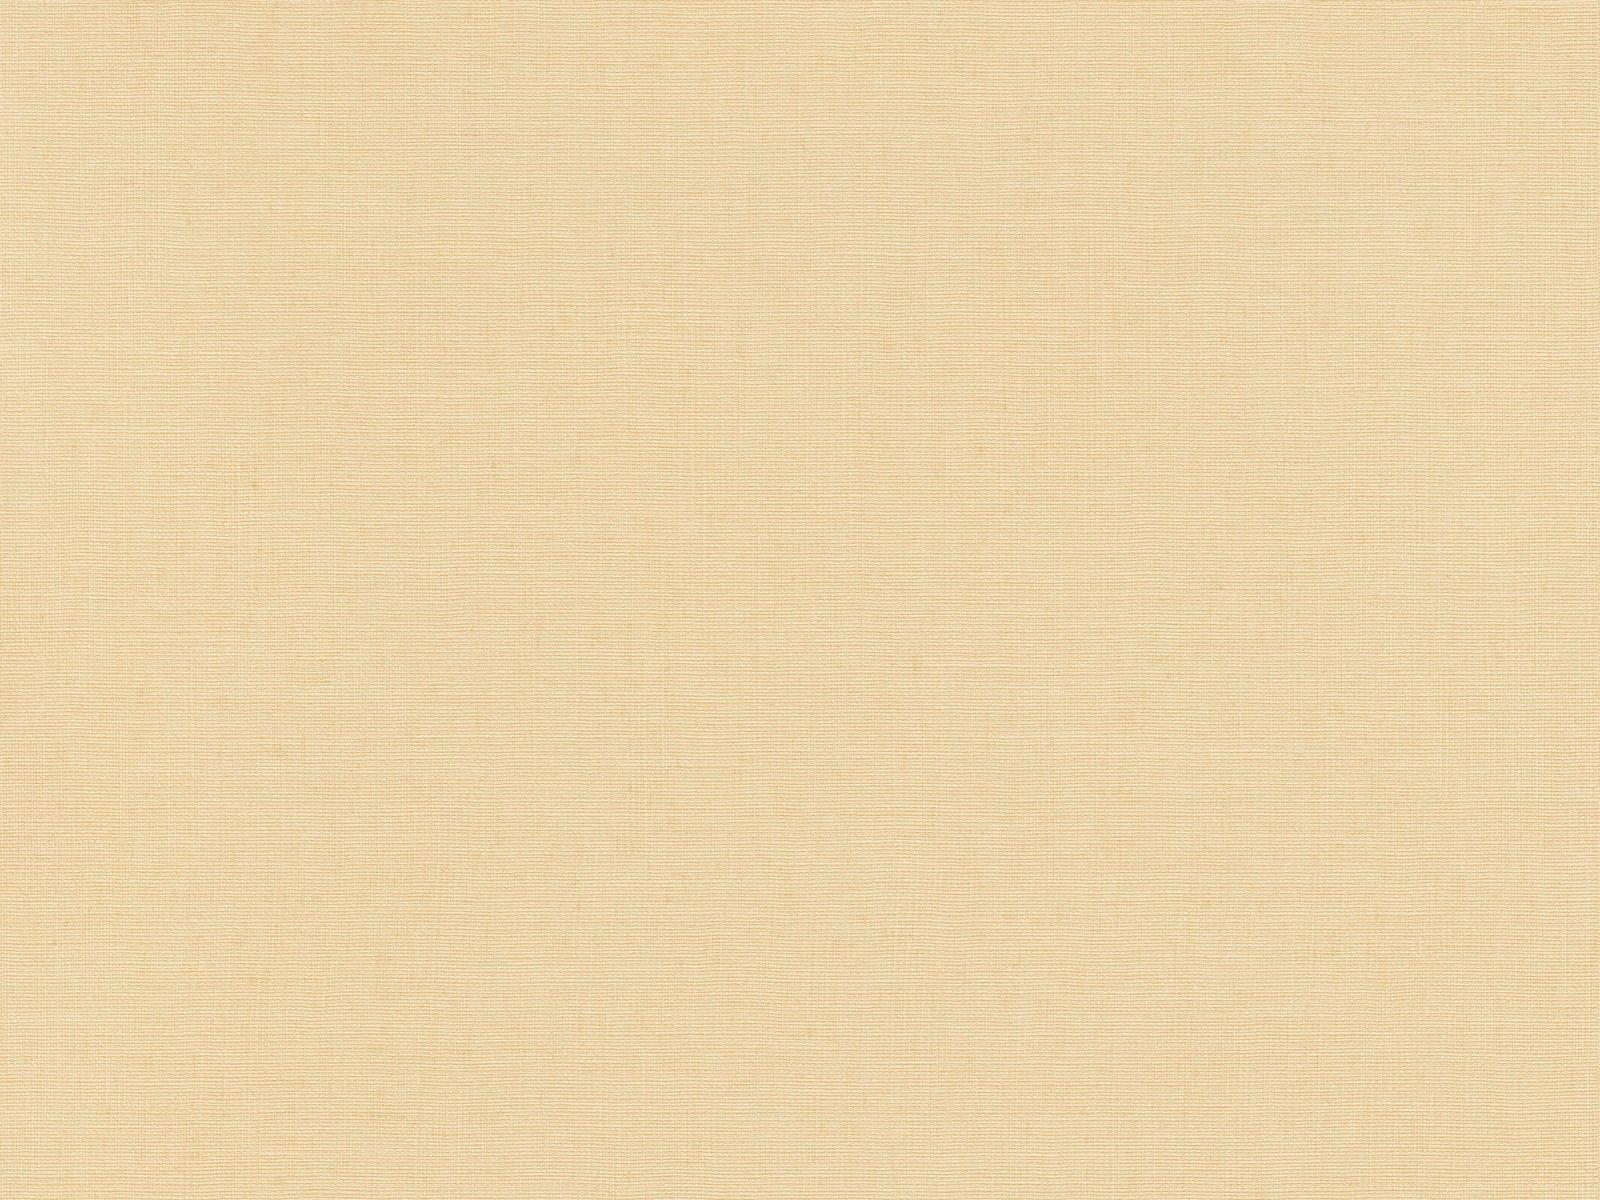 Vliesová tapeta s prirodzenou textilnou štruktúrou v béžovej farbe, ER-601635